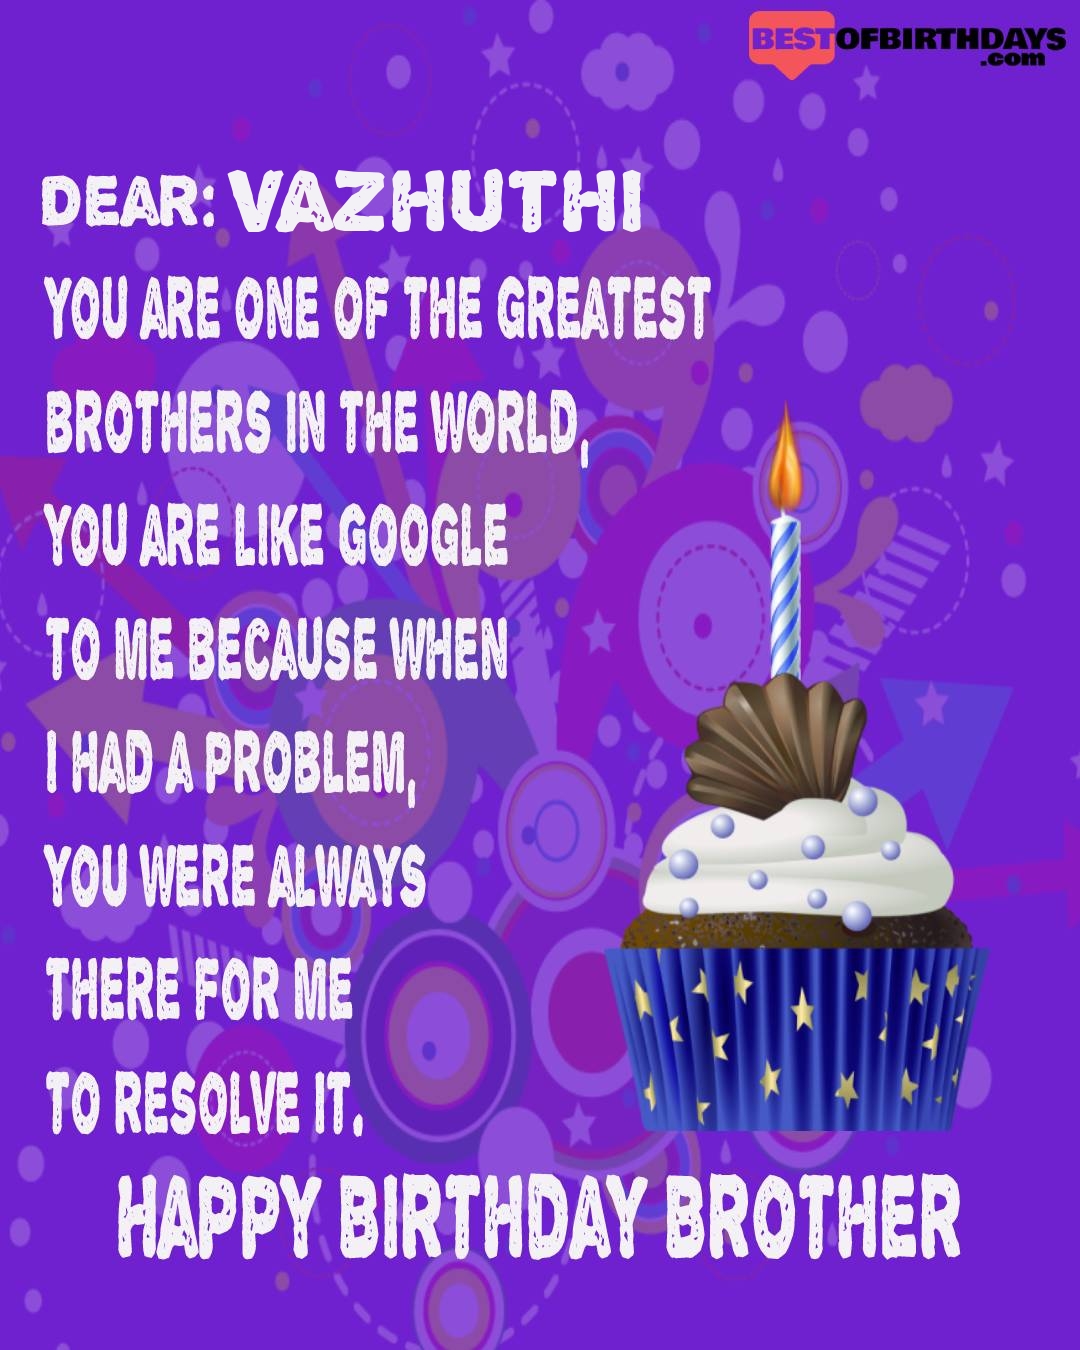 Happy birthday vazhuthi bhai brother bro